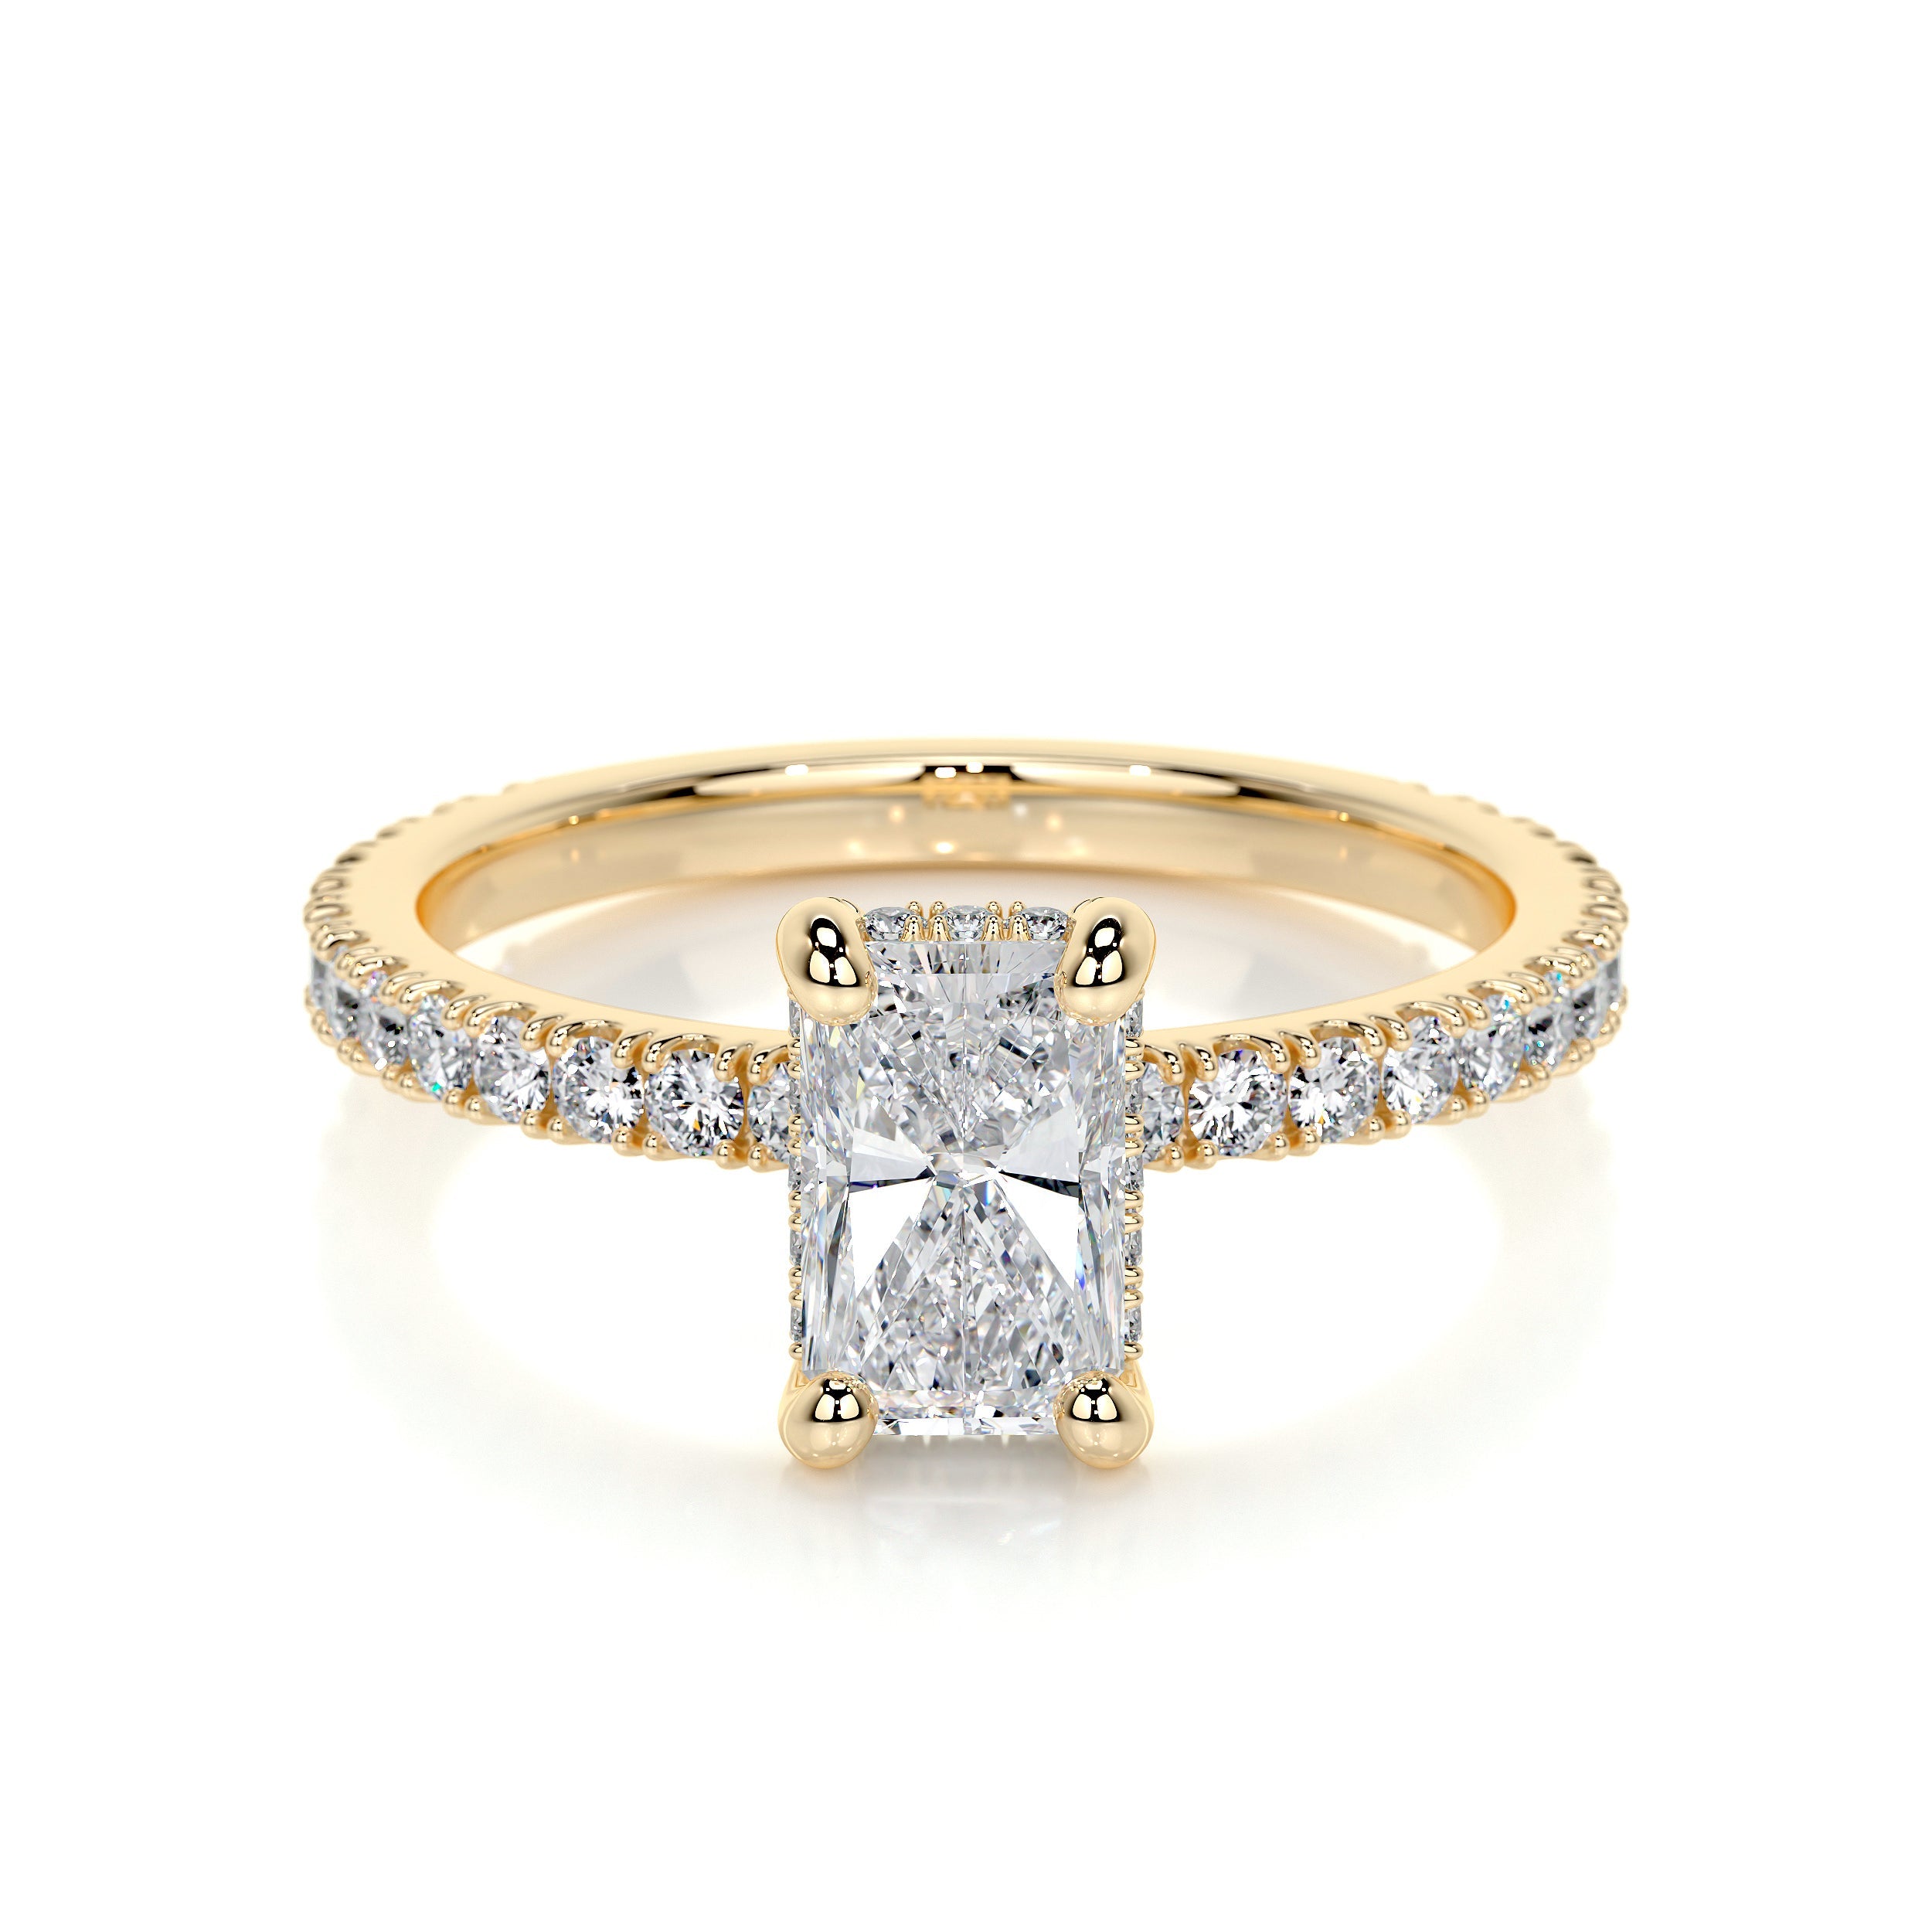 Deborah Lab Grown Diamond Ring   (1.5 Carat) -18K Yellow Gold